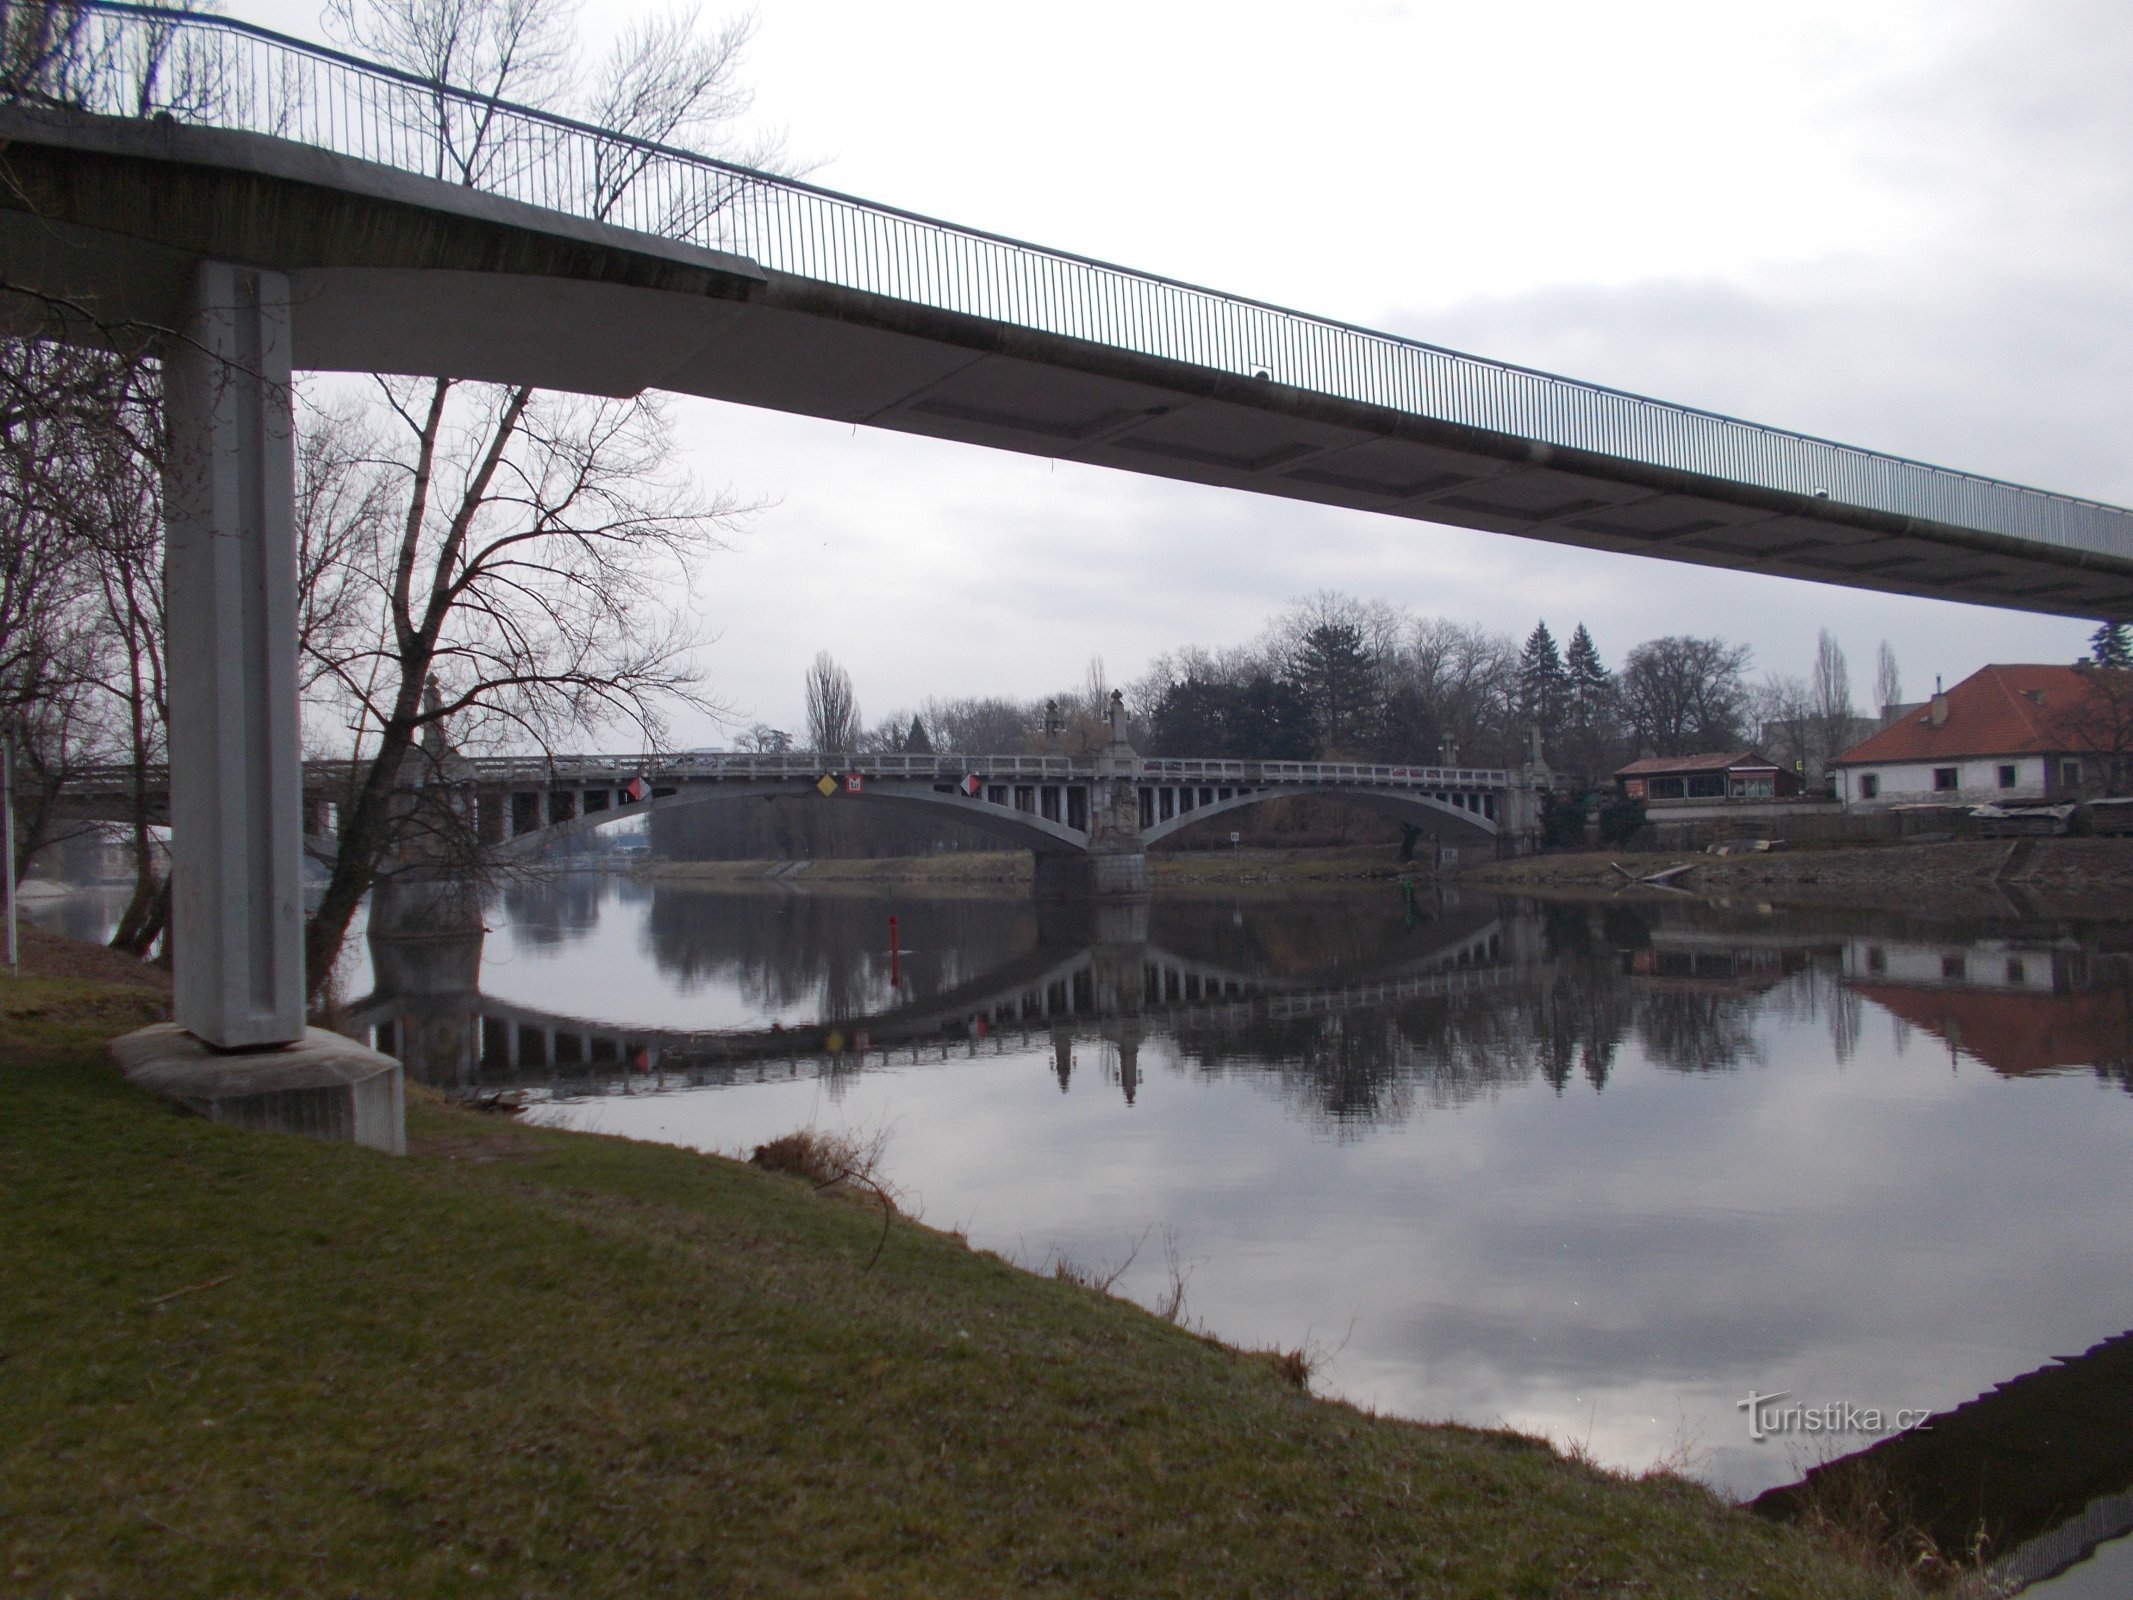 Cầu qua sông Elbe và cầu đi bộ đã đóng cửa